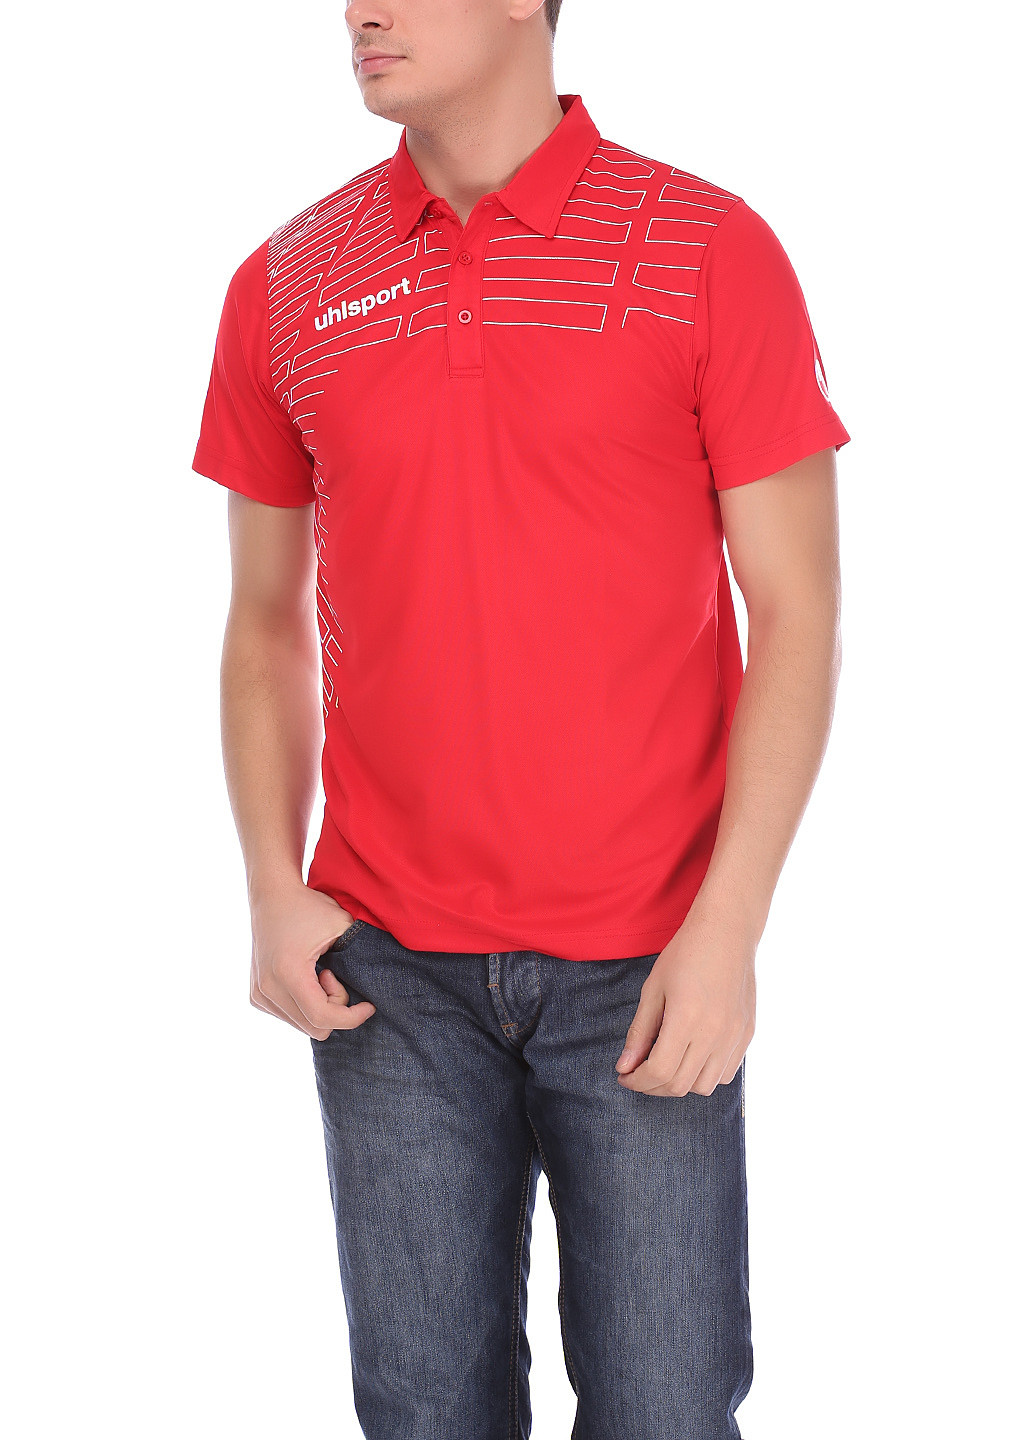 Красная футболка-поло для мужчин Uhlsport однотонная